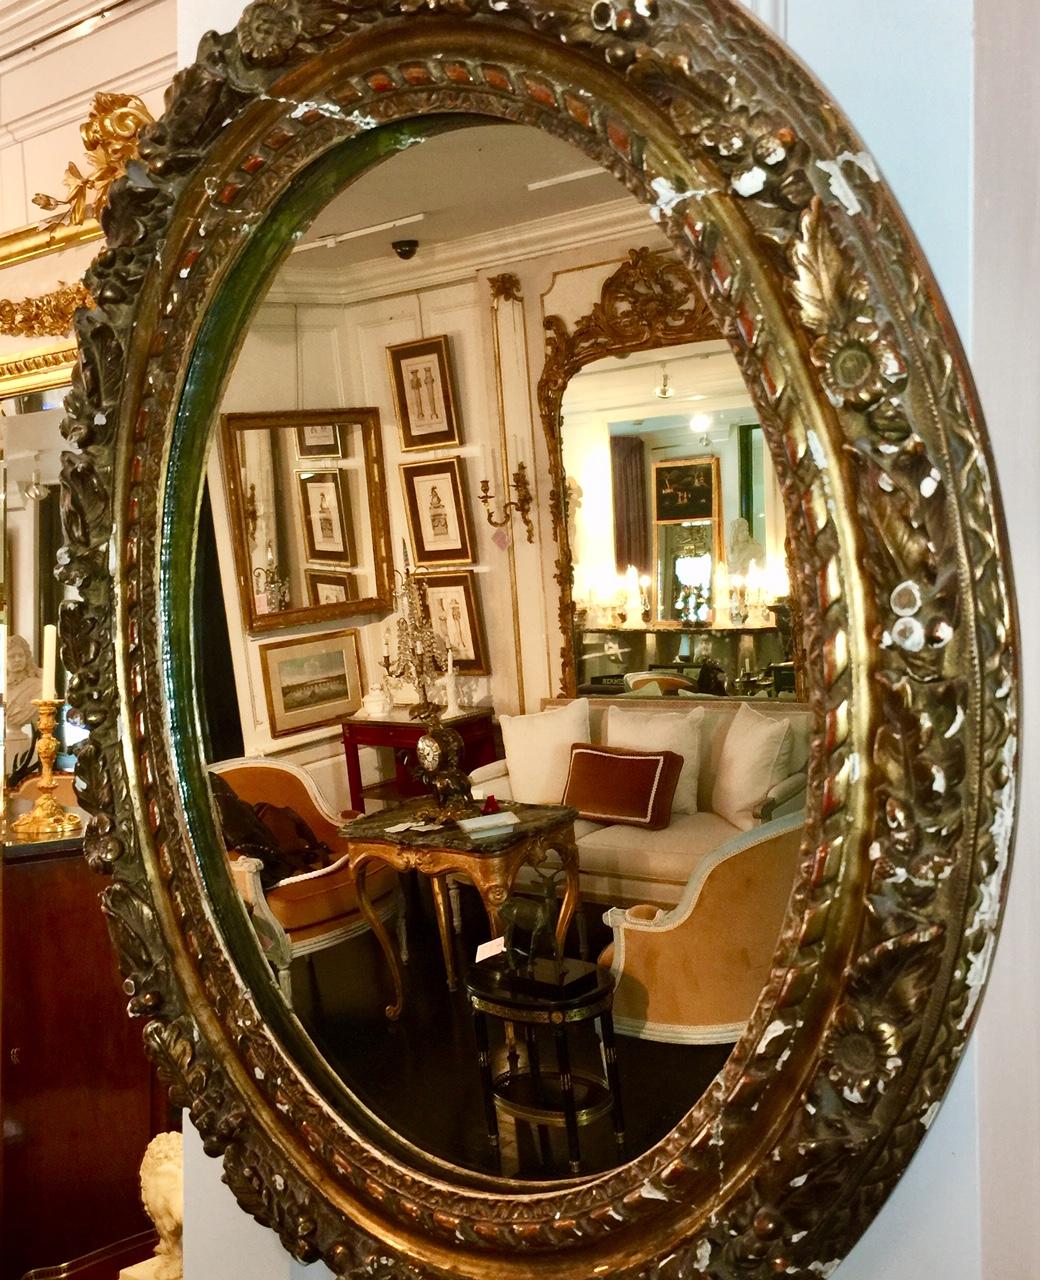 Französisch, neoklassischer Stil. Dieser antike französische Spiegel aus der Louis XVI-Periode (18. Jahrhundert) hat einen wunderschön verzierten Rahmen aus blattvergoldetem Holz mit Blumen, Beeren und Blättern. Der ovale Rahmen umgibt das